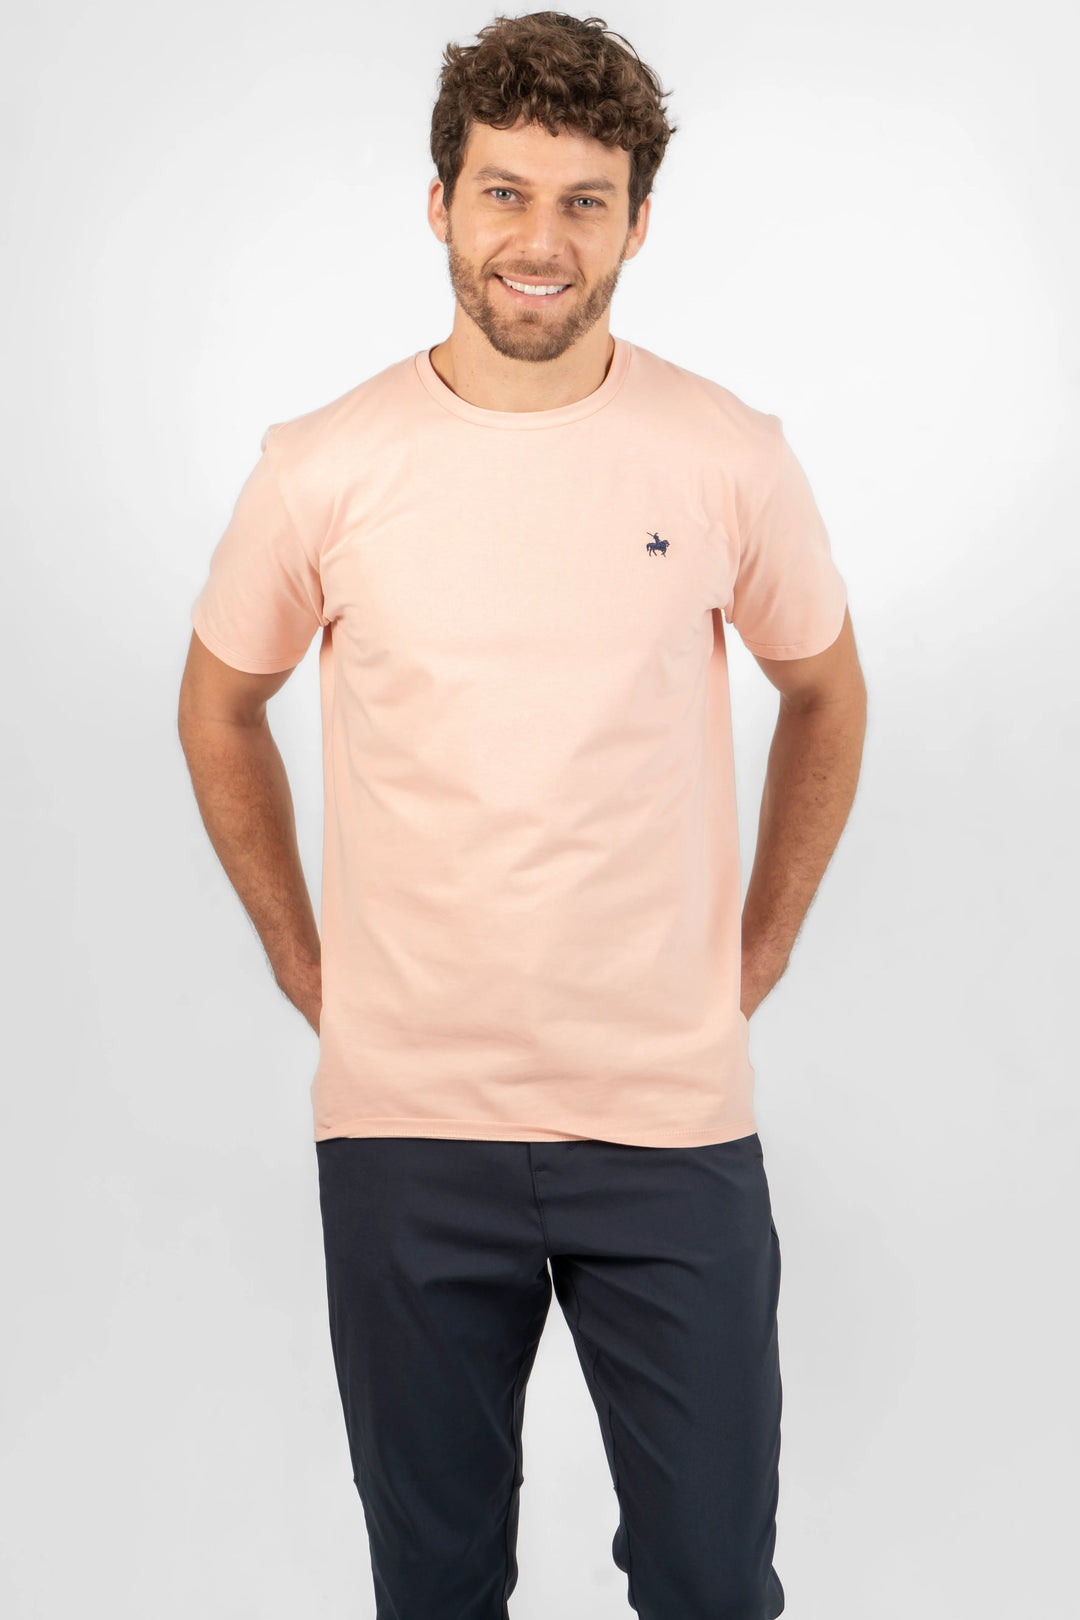 camiseta para hombre rosada. Confeccionada con una tela sumamente suave, reconocida por su tacto similar a la piel de durazno.